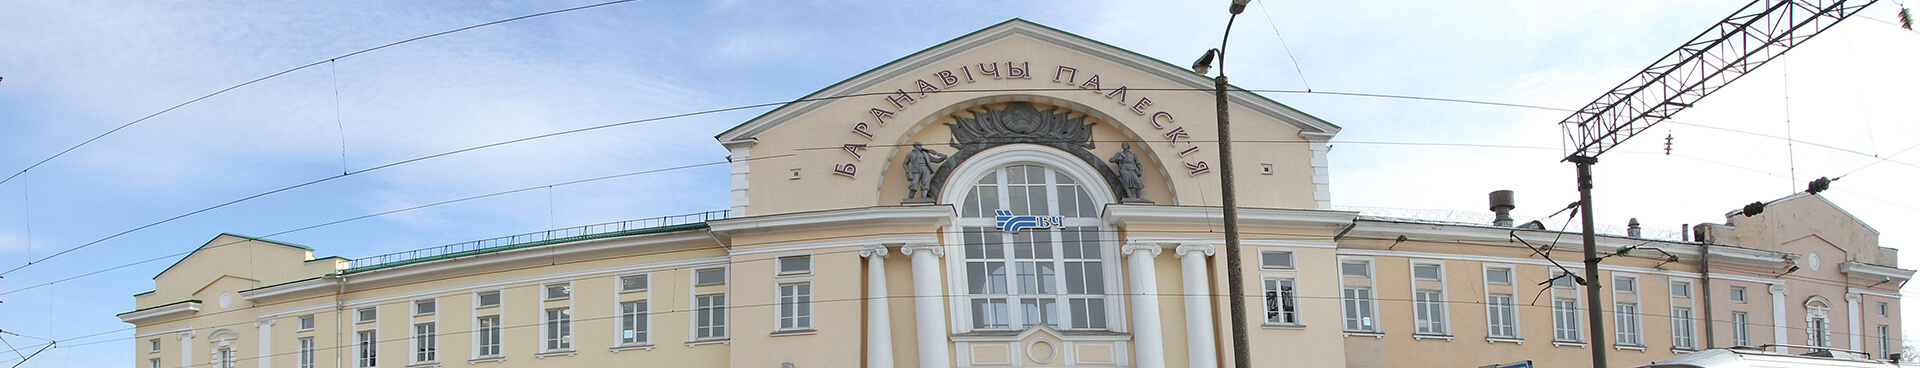 Вокзал станции Барановичи-Полесские